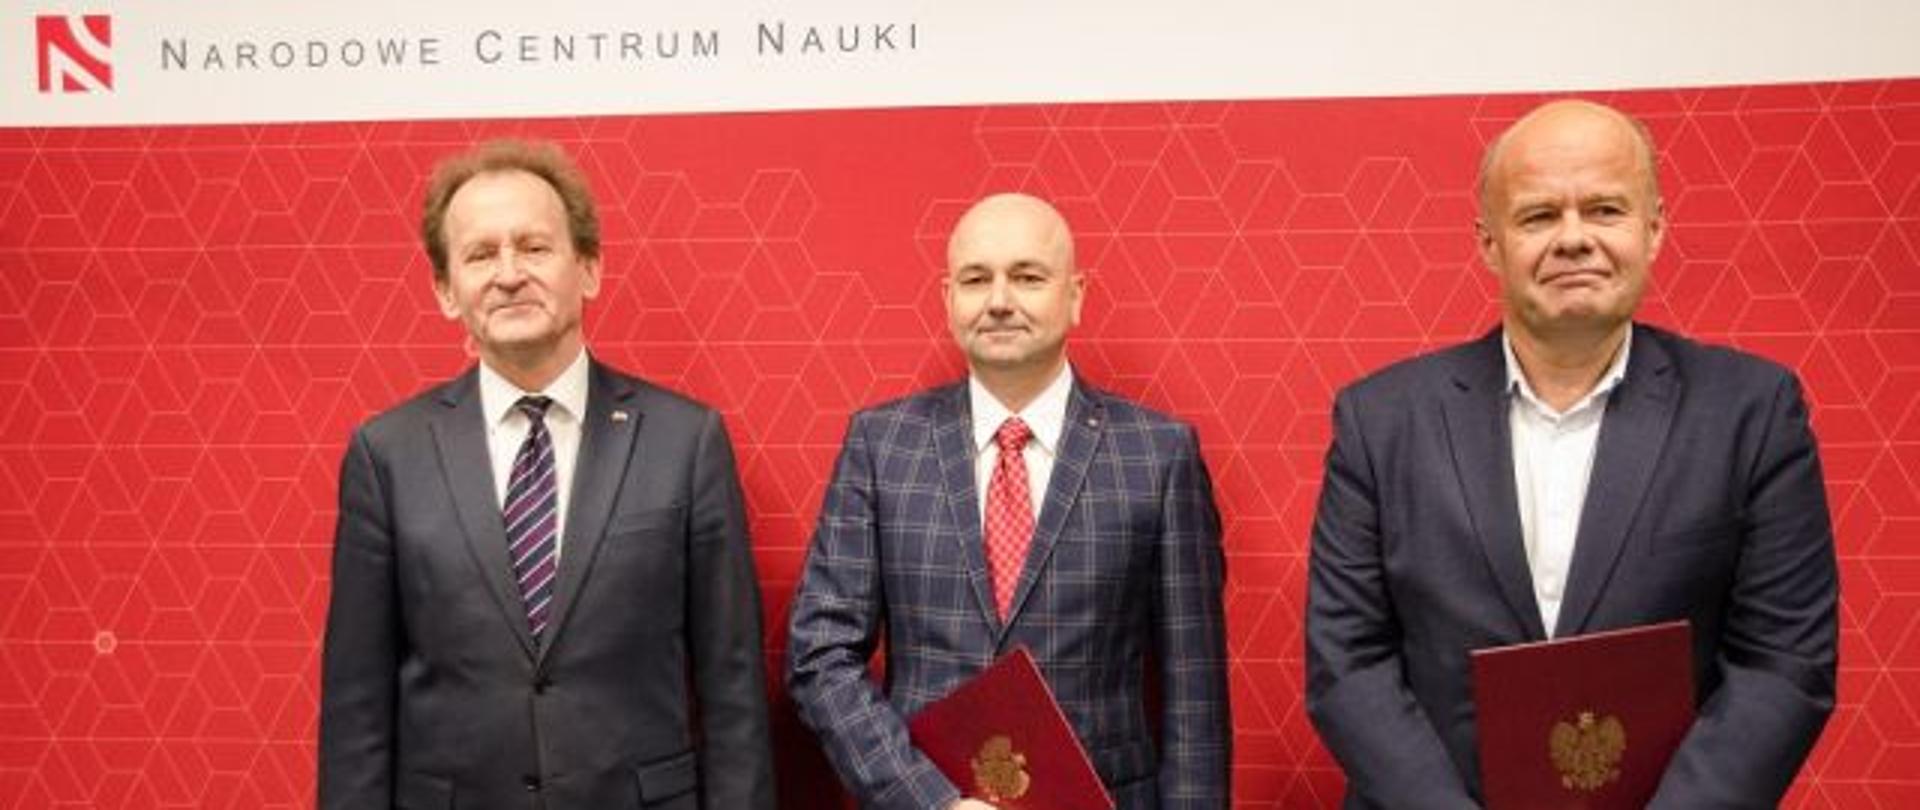 Na tle czerwonej ściany z napisem Narodowe Centrum Nauki stoi wiceminister Bernacki i dwóch mężczyzn w garniturach.